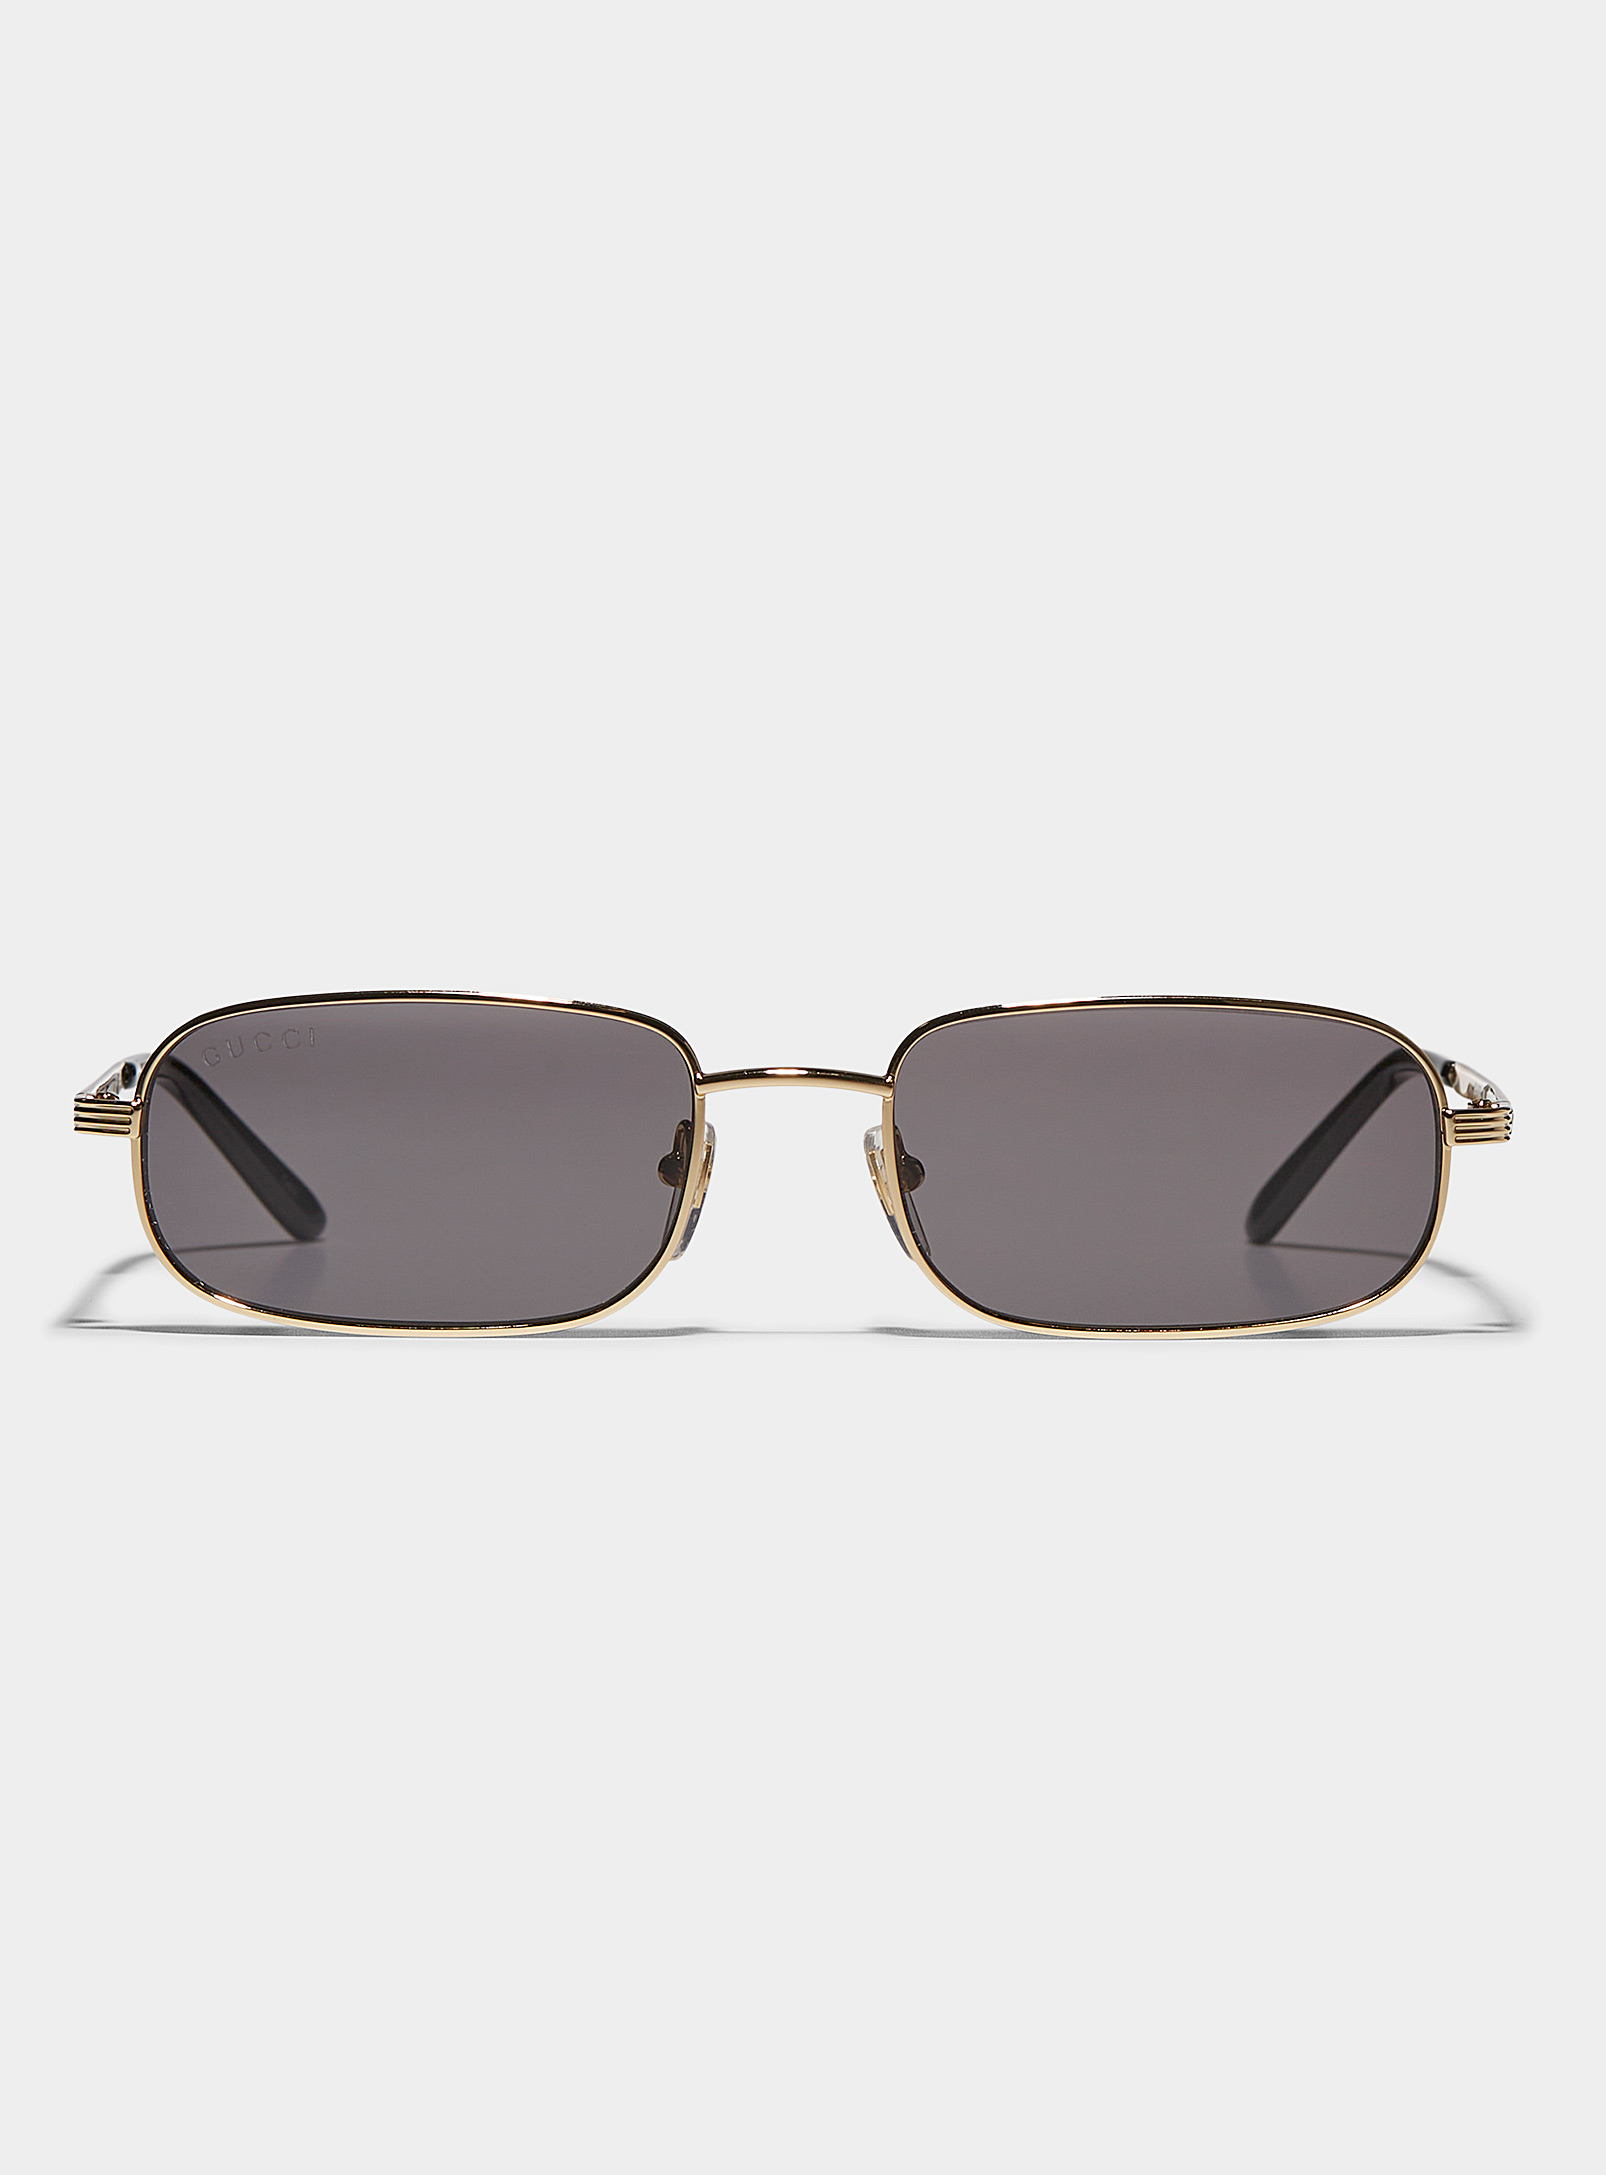 Gucci - Sleek golden sunglasses